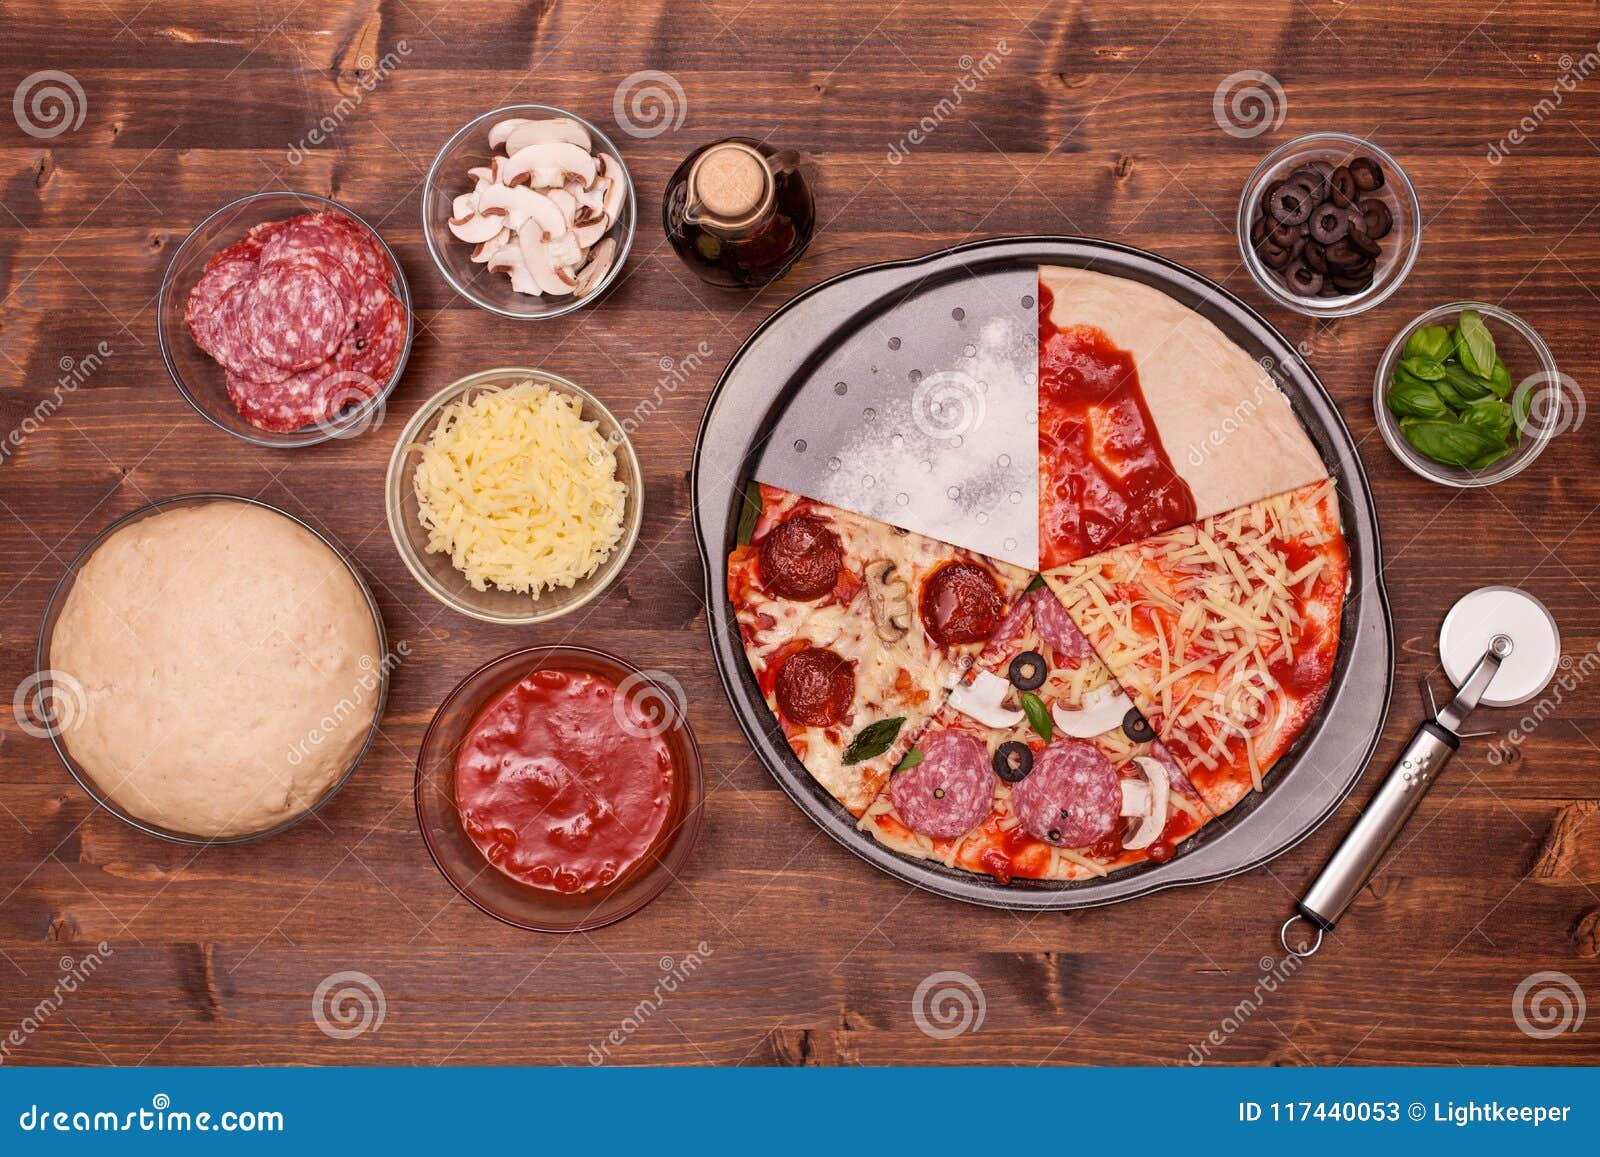 что нужно для пиццы в домашних условиях ингредиенты духовке фото 103